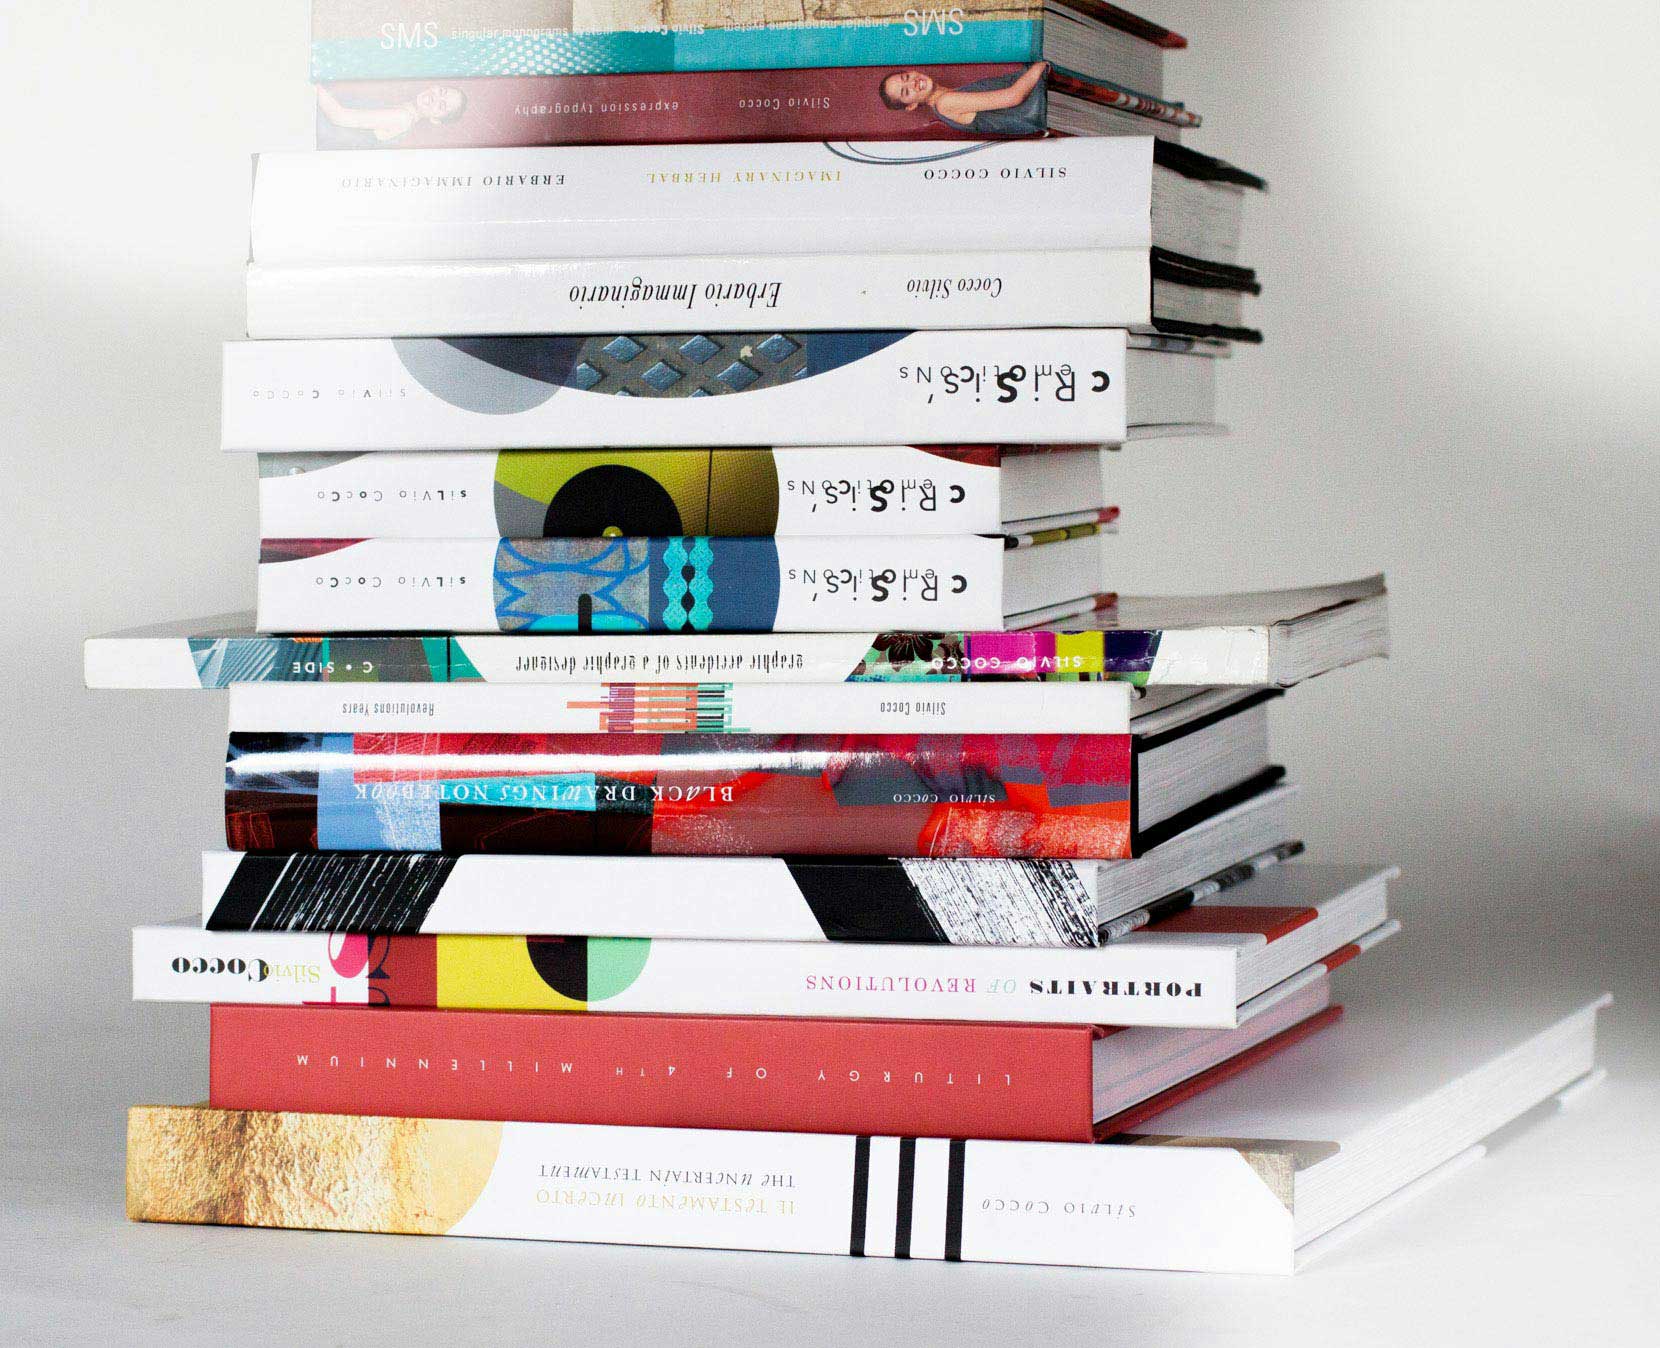 silvio-cocco-books-design-art